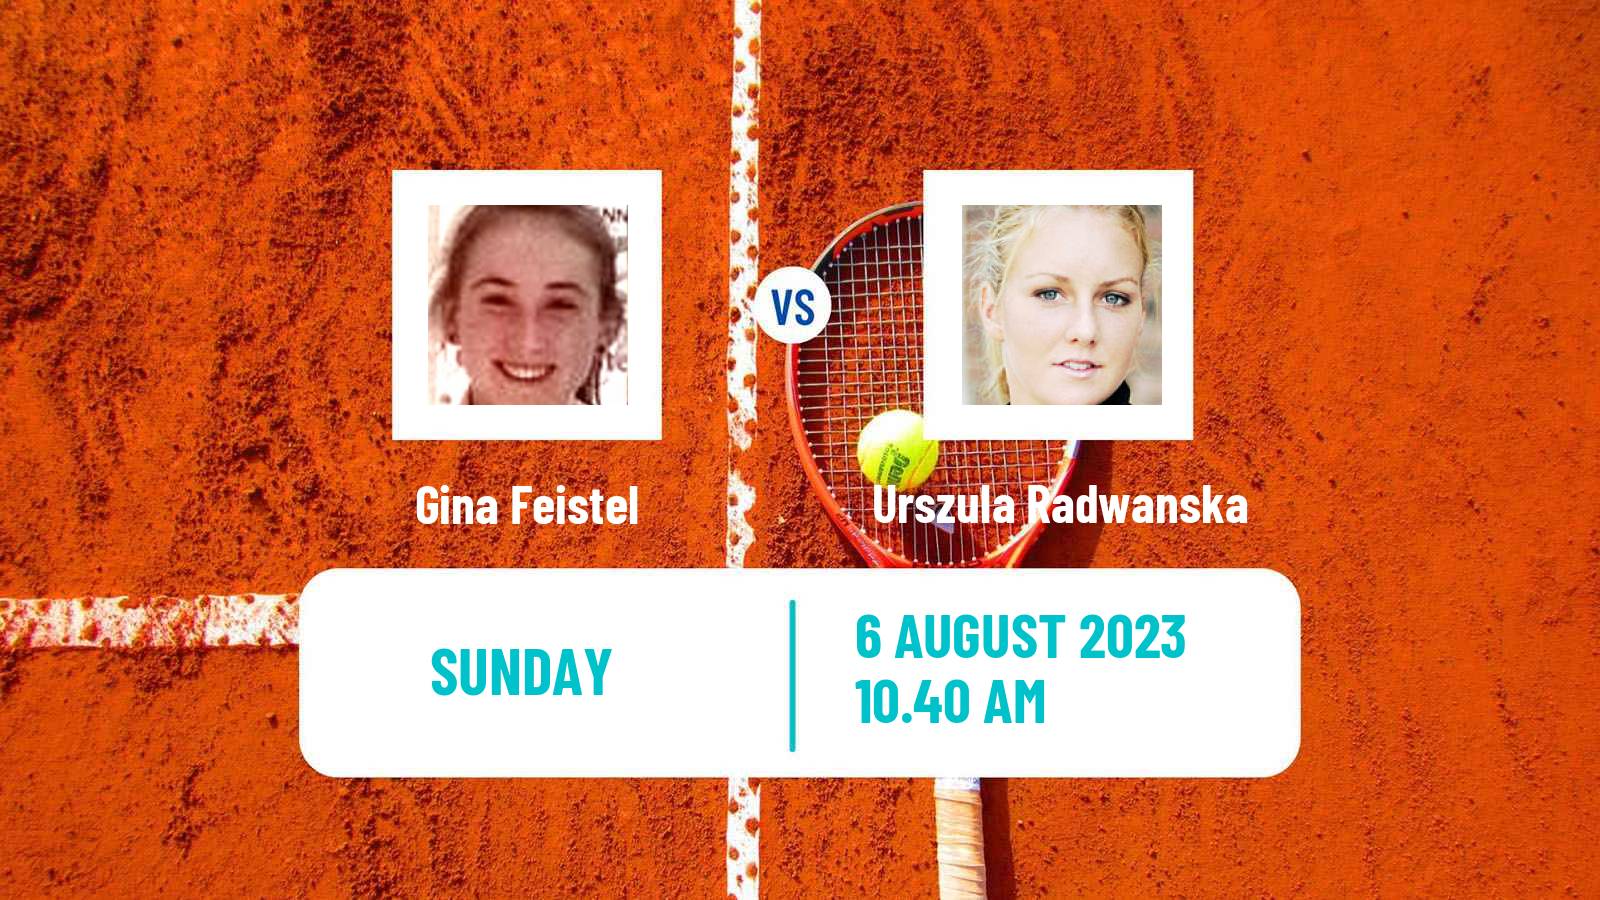 Tennis Grodzisk Mazowiecki Challenger Women Gina Feistel - Urszula Radwanska